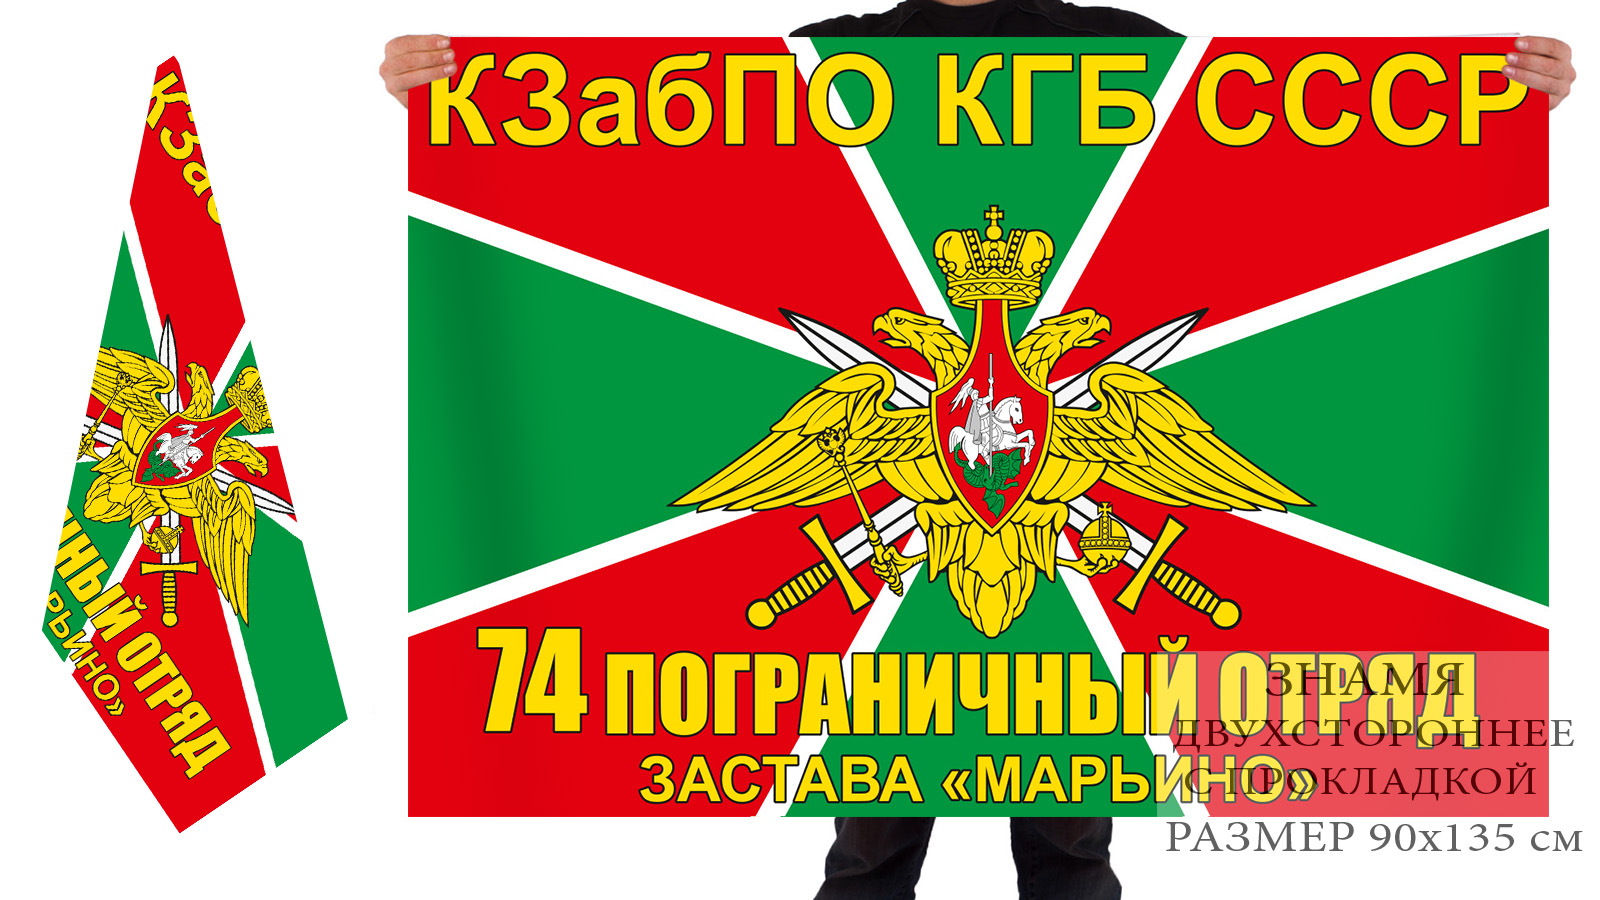 Двусторонний флаг заставы "Марьино" 74 ПогО КЗабПО